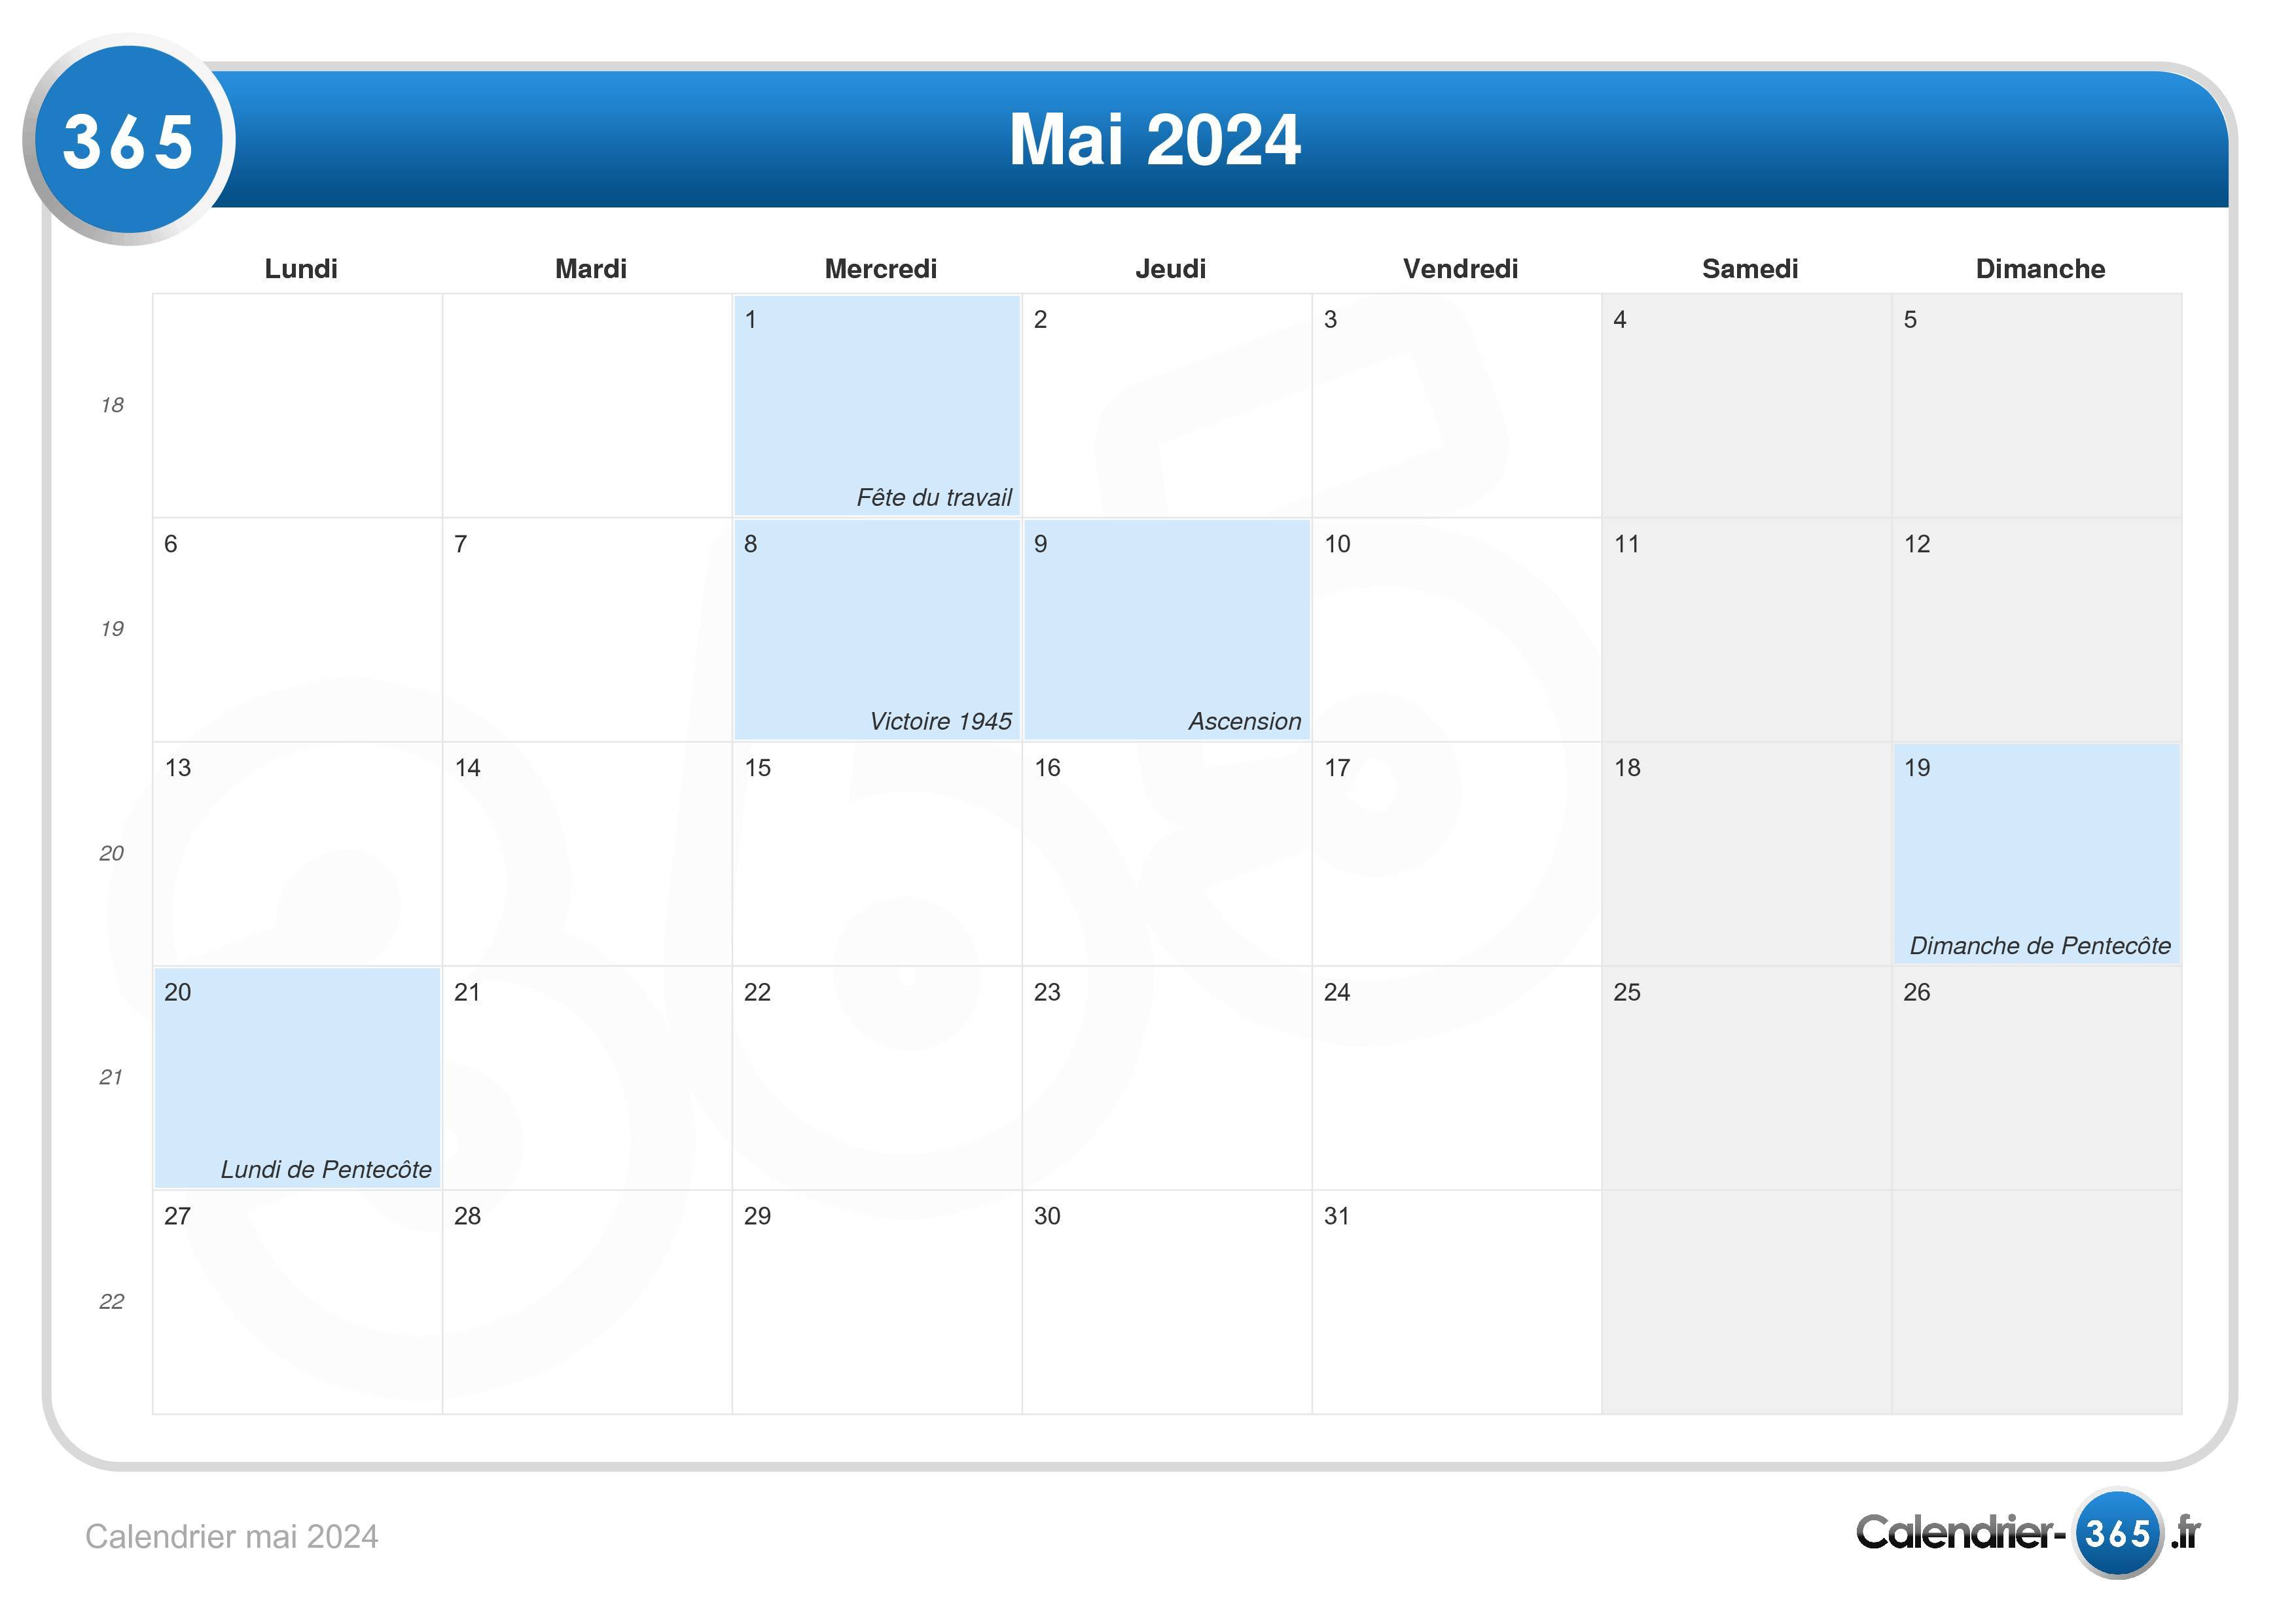 Как работают школы в мае 2024. Календарь май 2024. План на май 2024. Календарь на май 2024г. Май 2024 календарь с местом для записей.